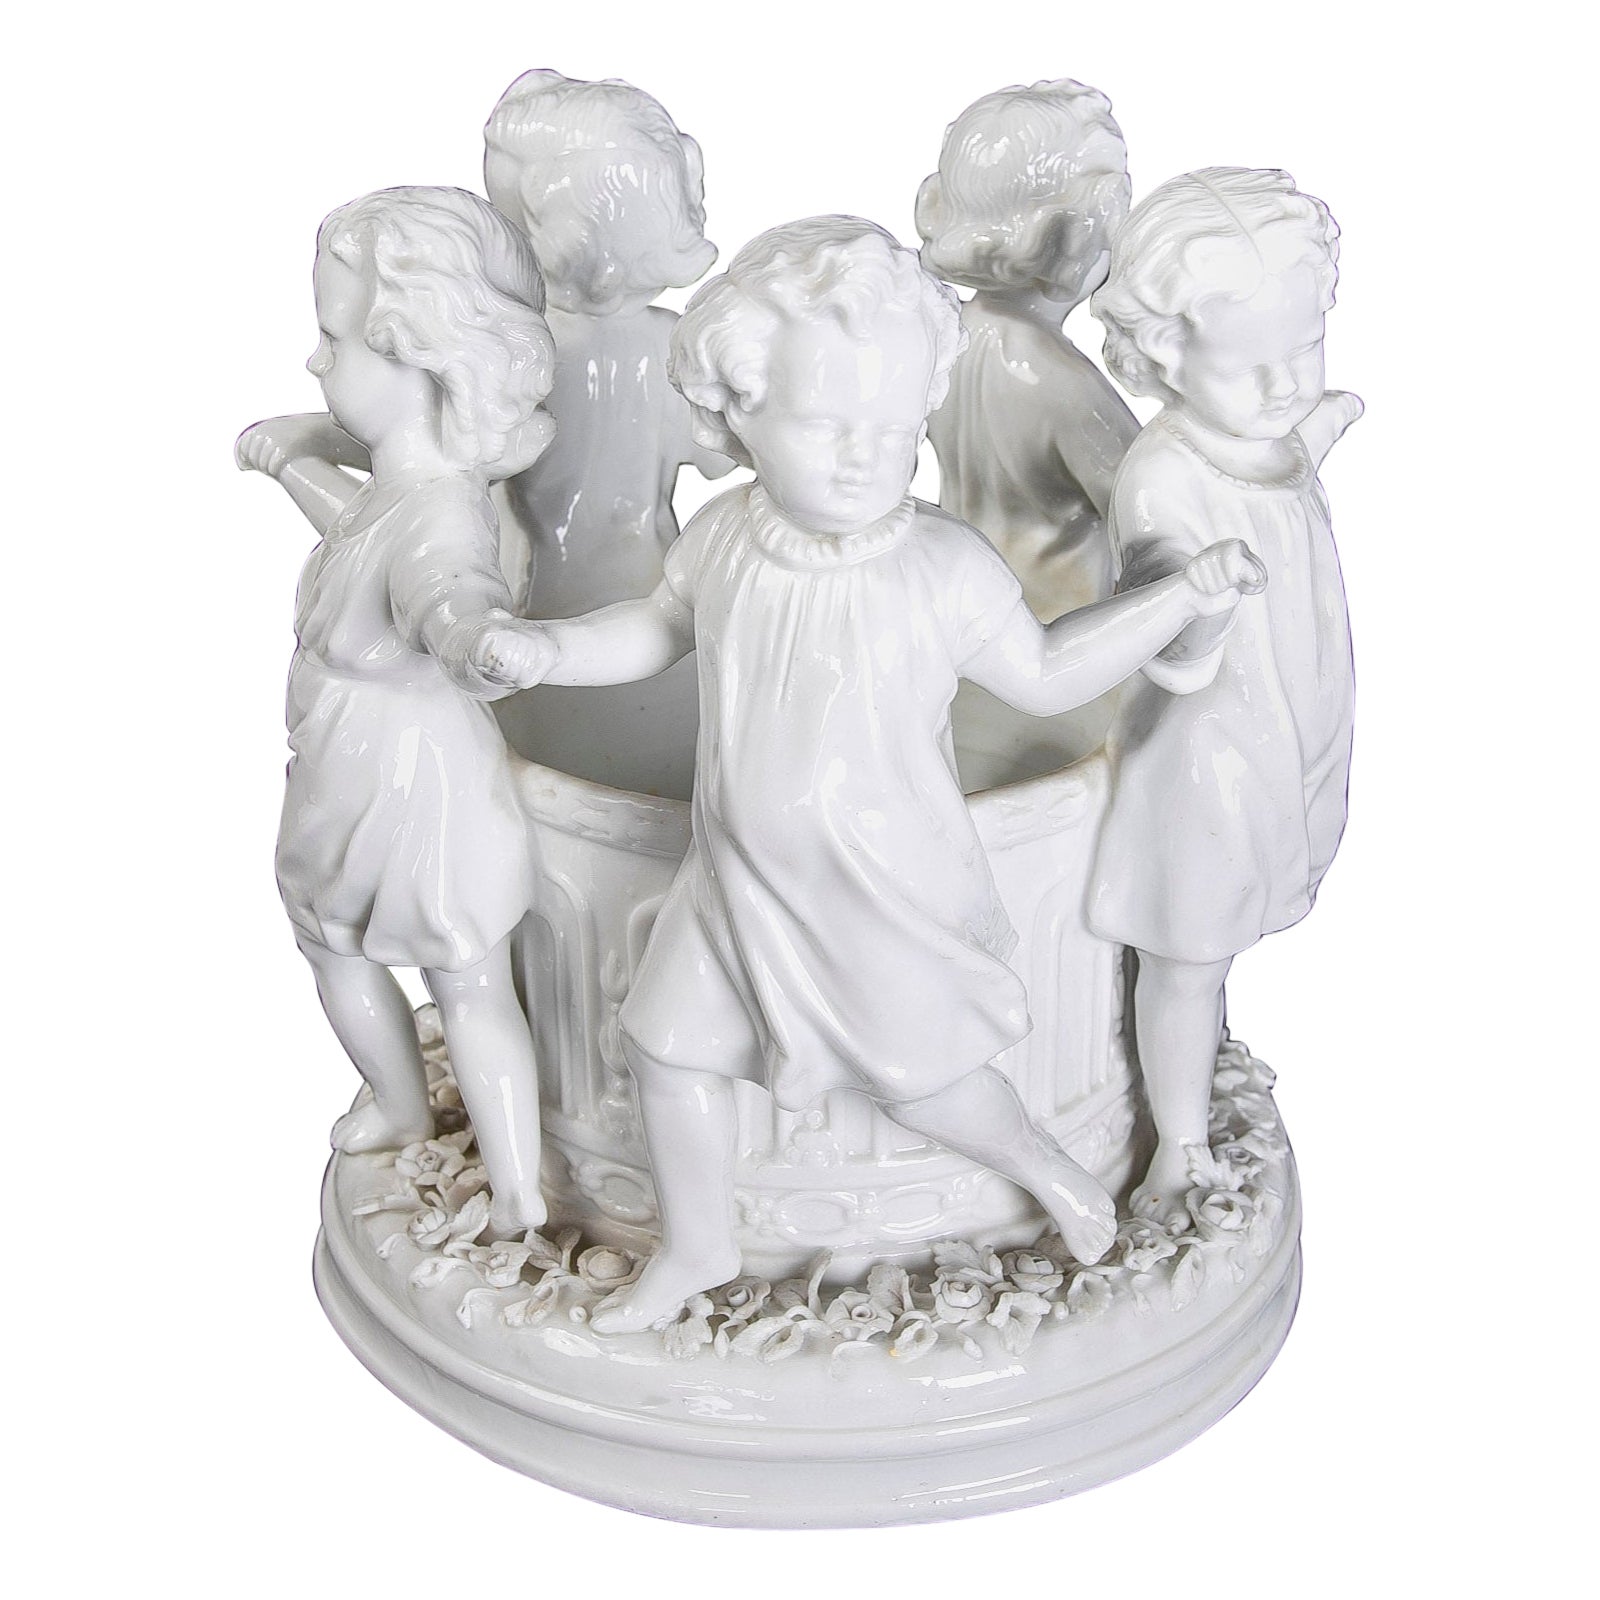 Österreichisches Porzellan-Skulptur-Set aus dem 19. Jahrhundert in Weiß mit Kindern